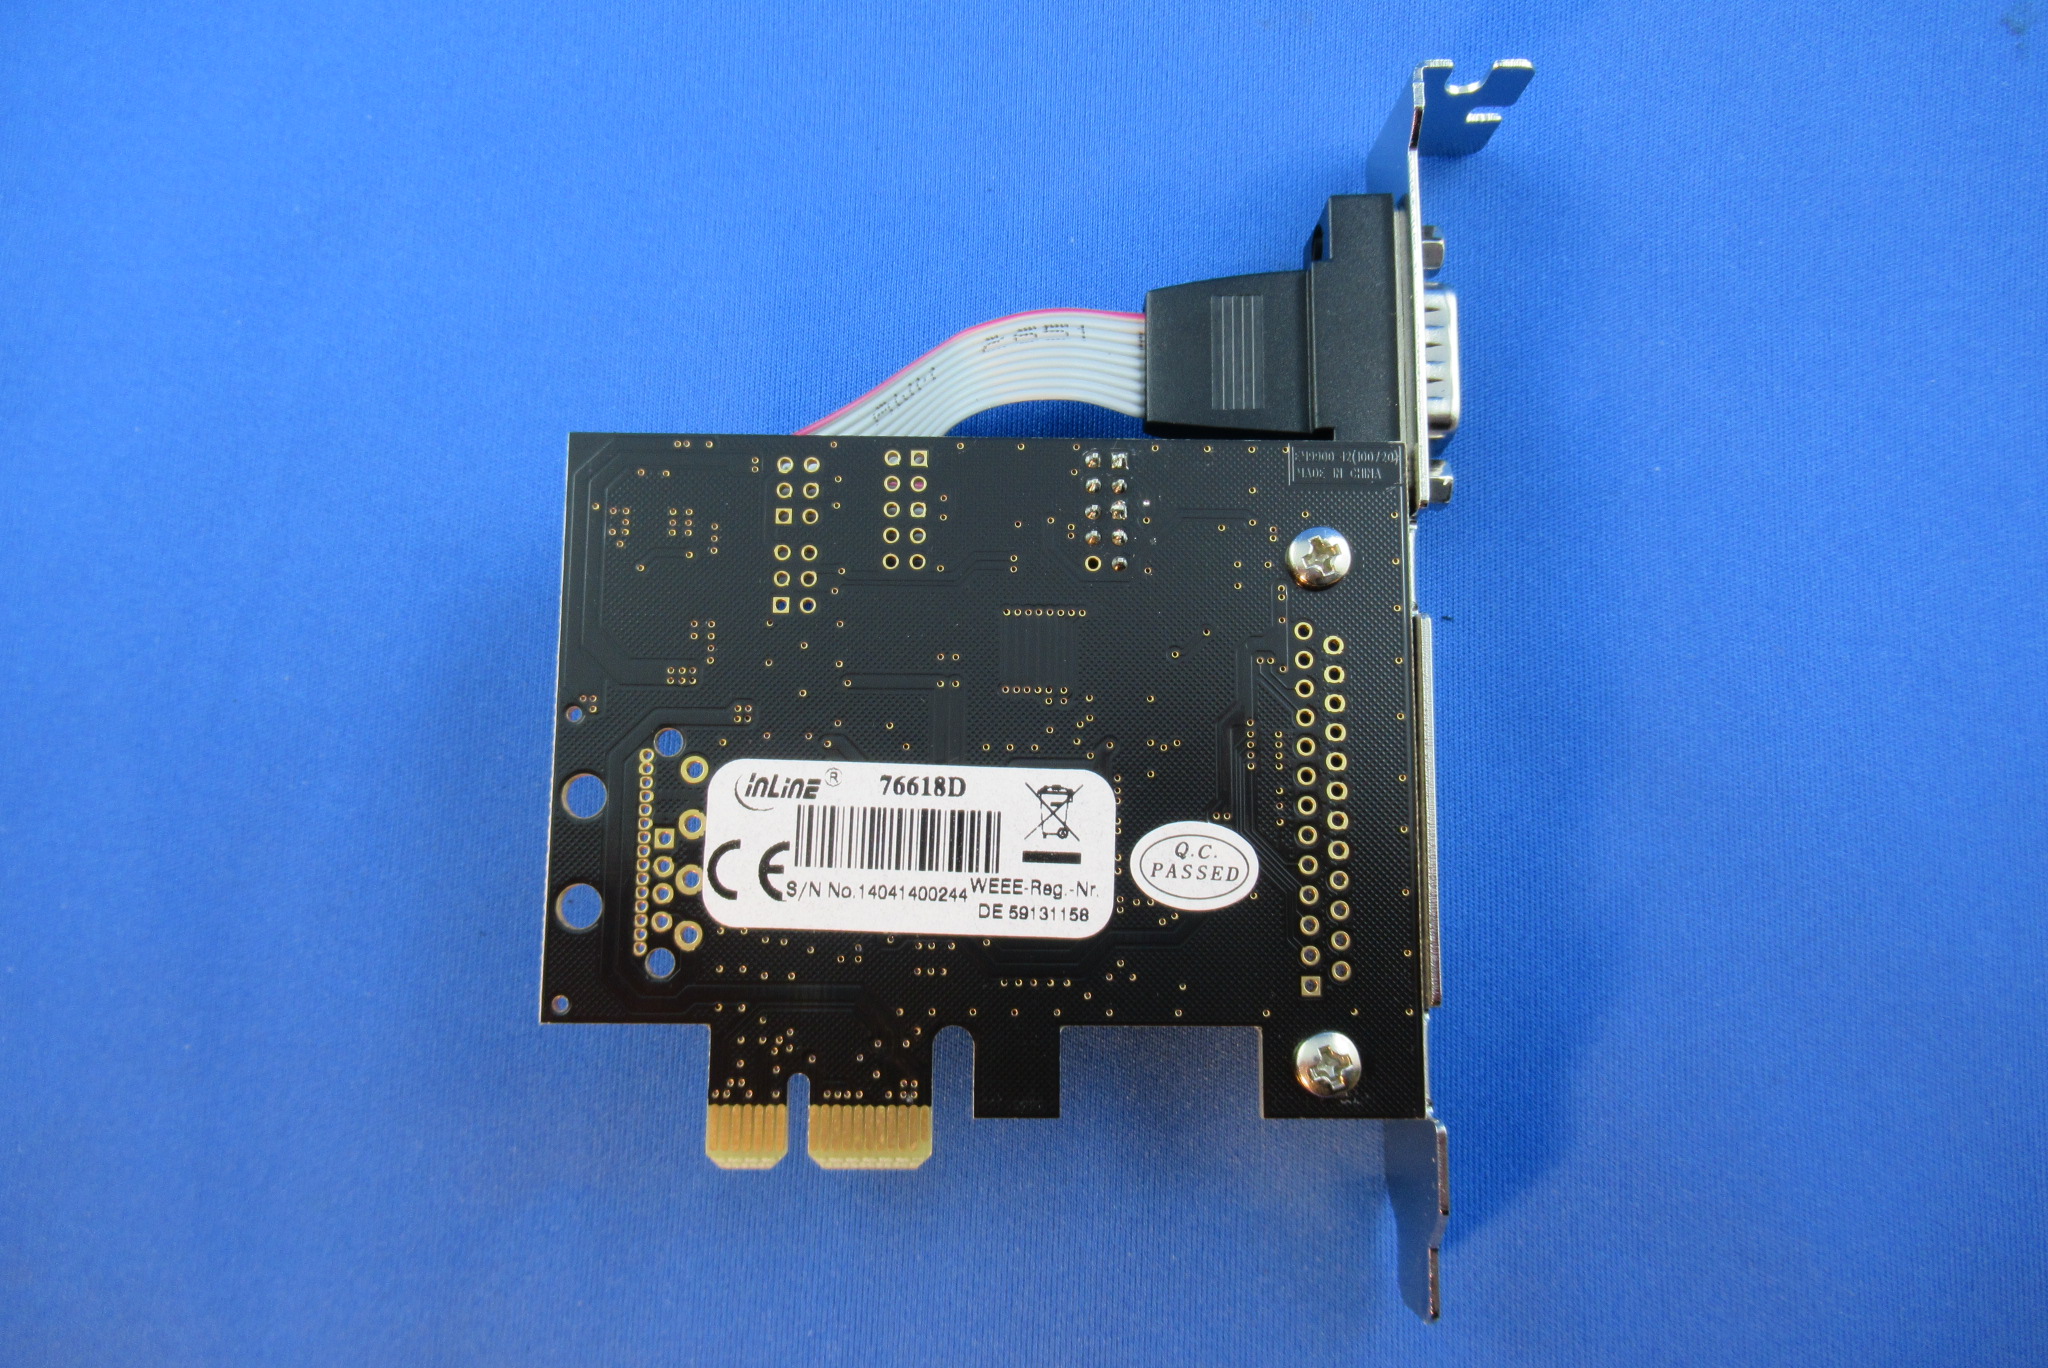 InLine I/O-Karte PCIe 1x RS232 (seriell) INTOS 76618D